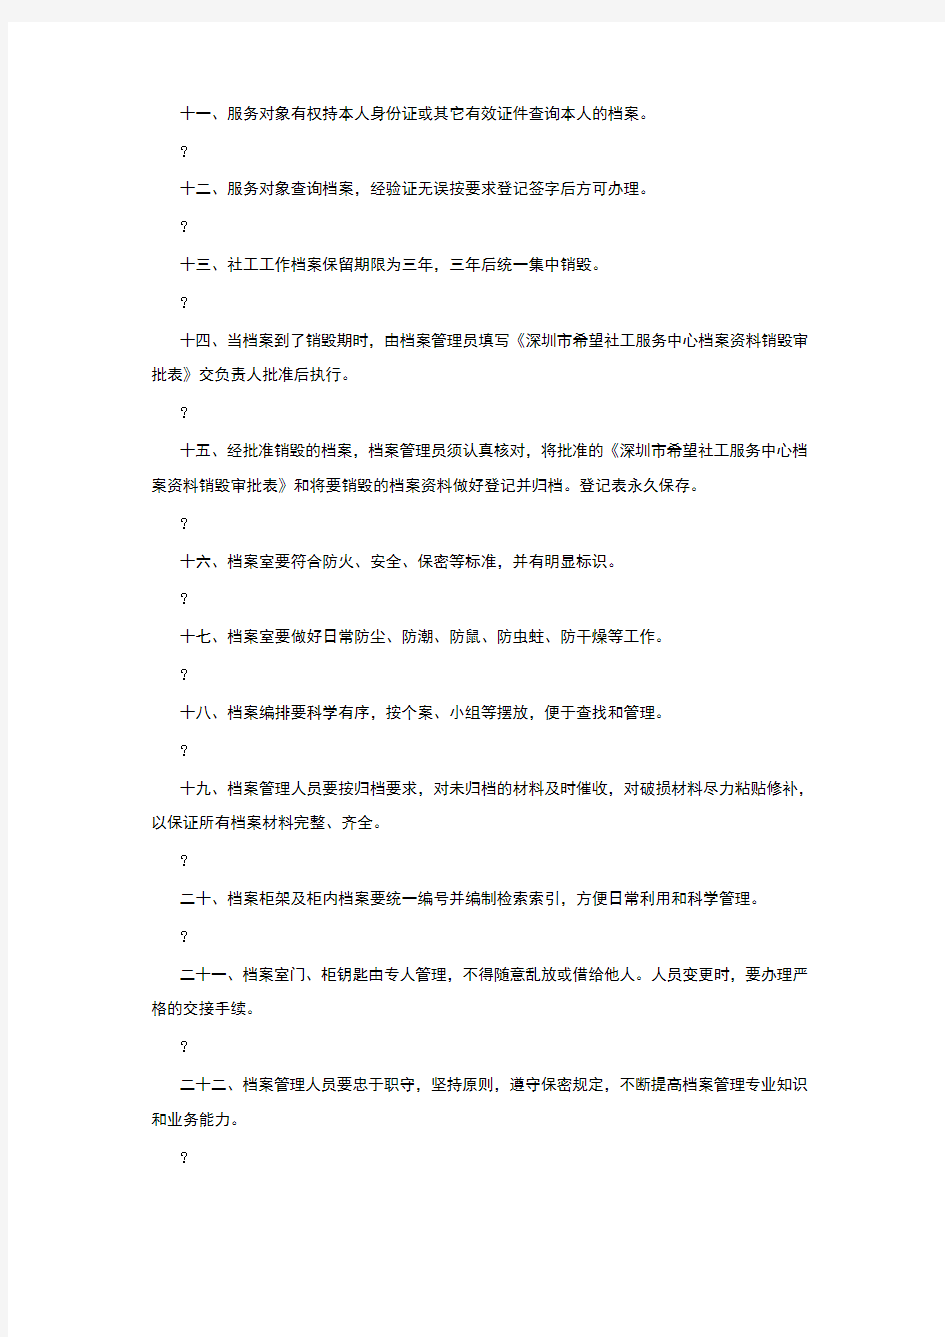 深圳市希望社会工作服务中心档案管理制度